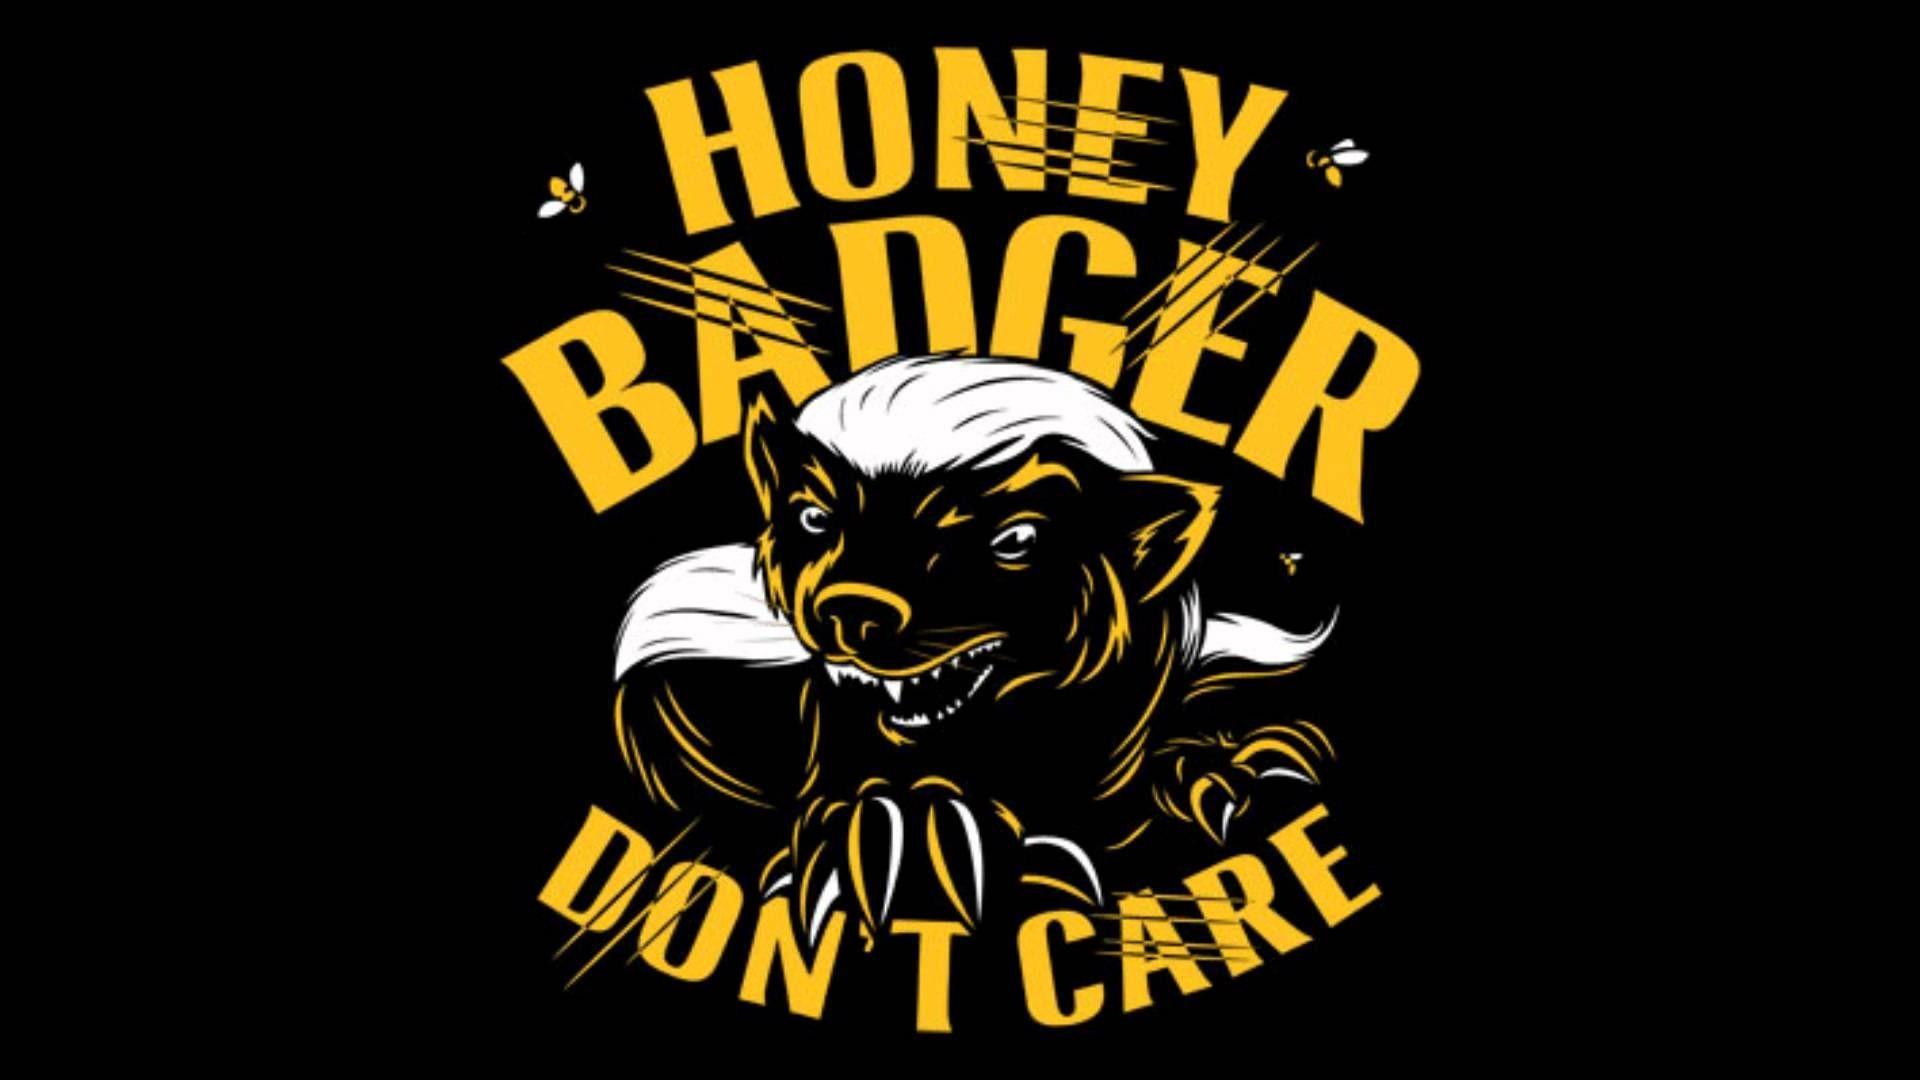 Honey badger HD wallpapers  Pxfuel